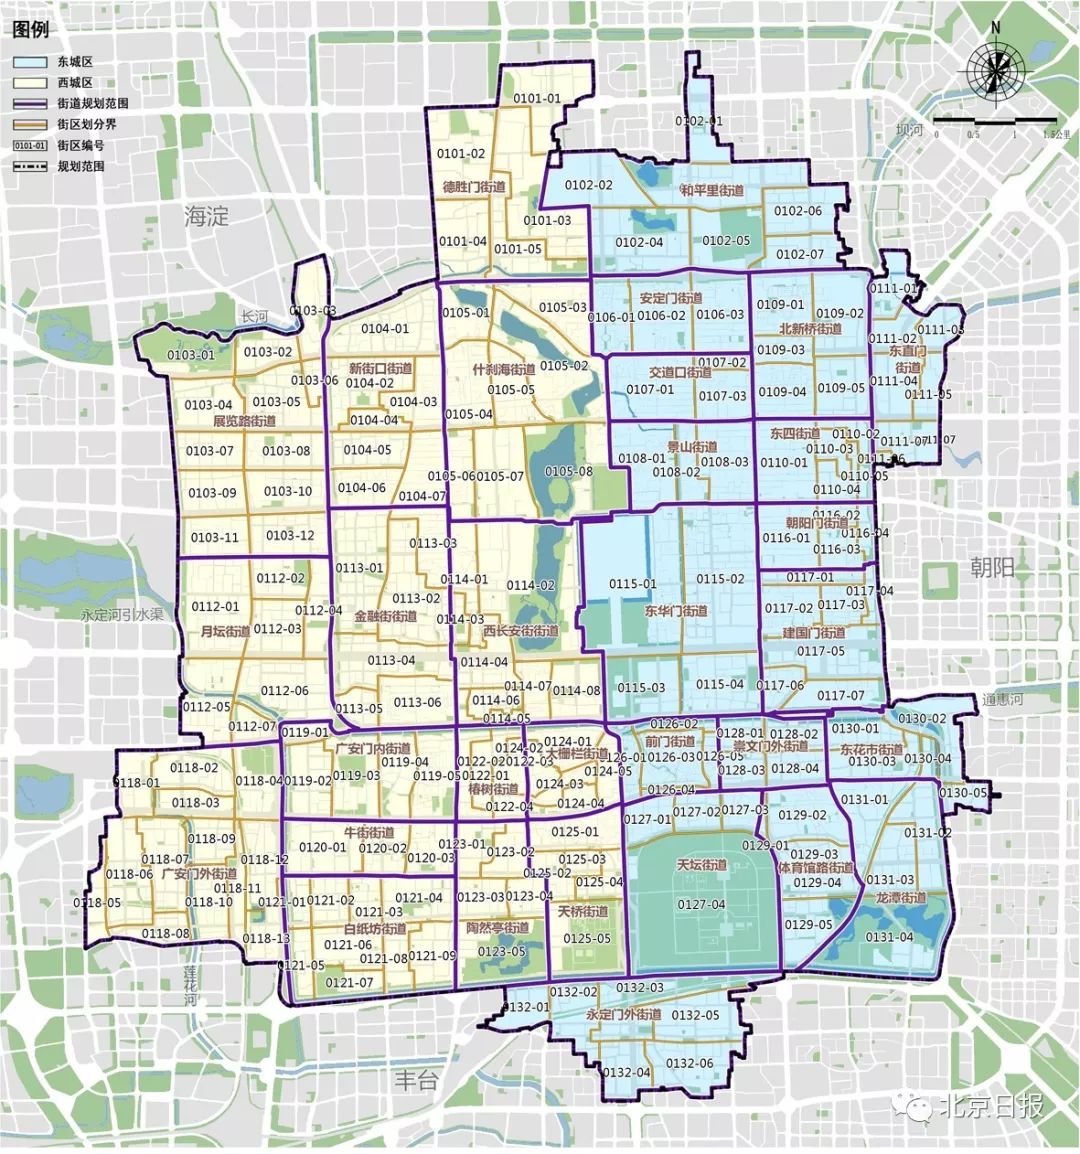 依托东城区17个街道和西城区15个街道进一步划分183个街区,每个街区